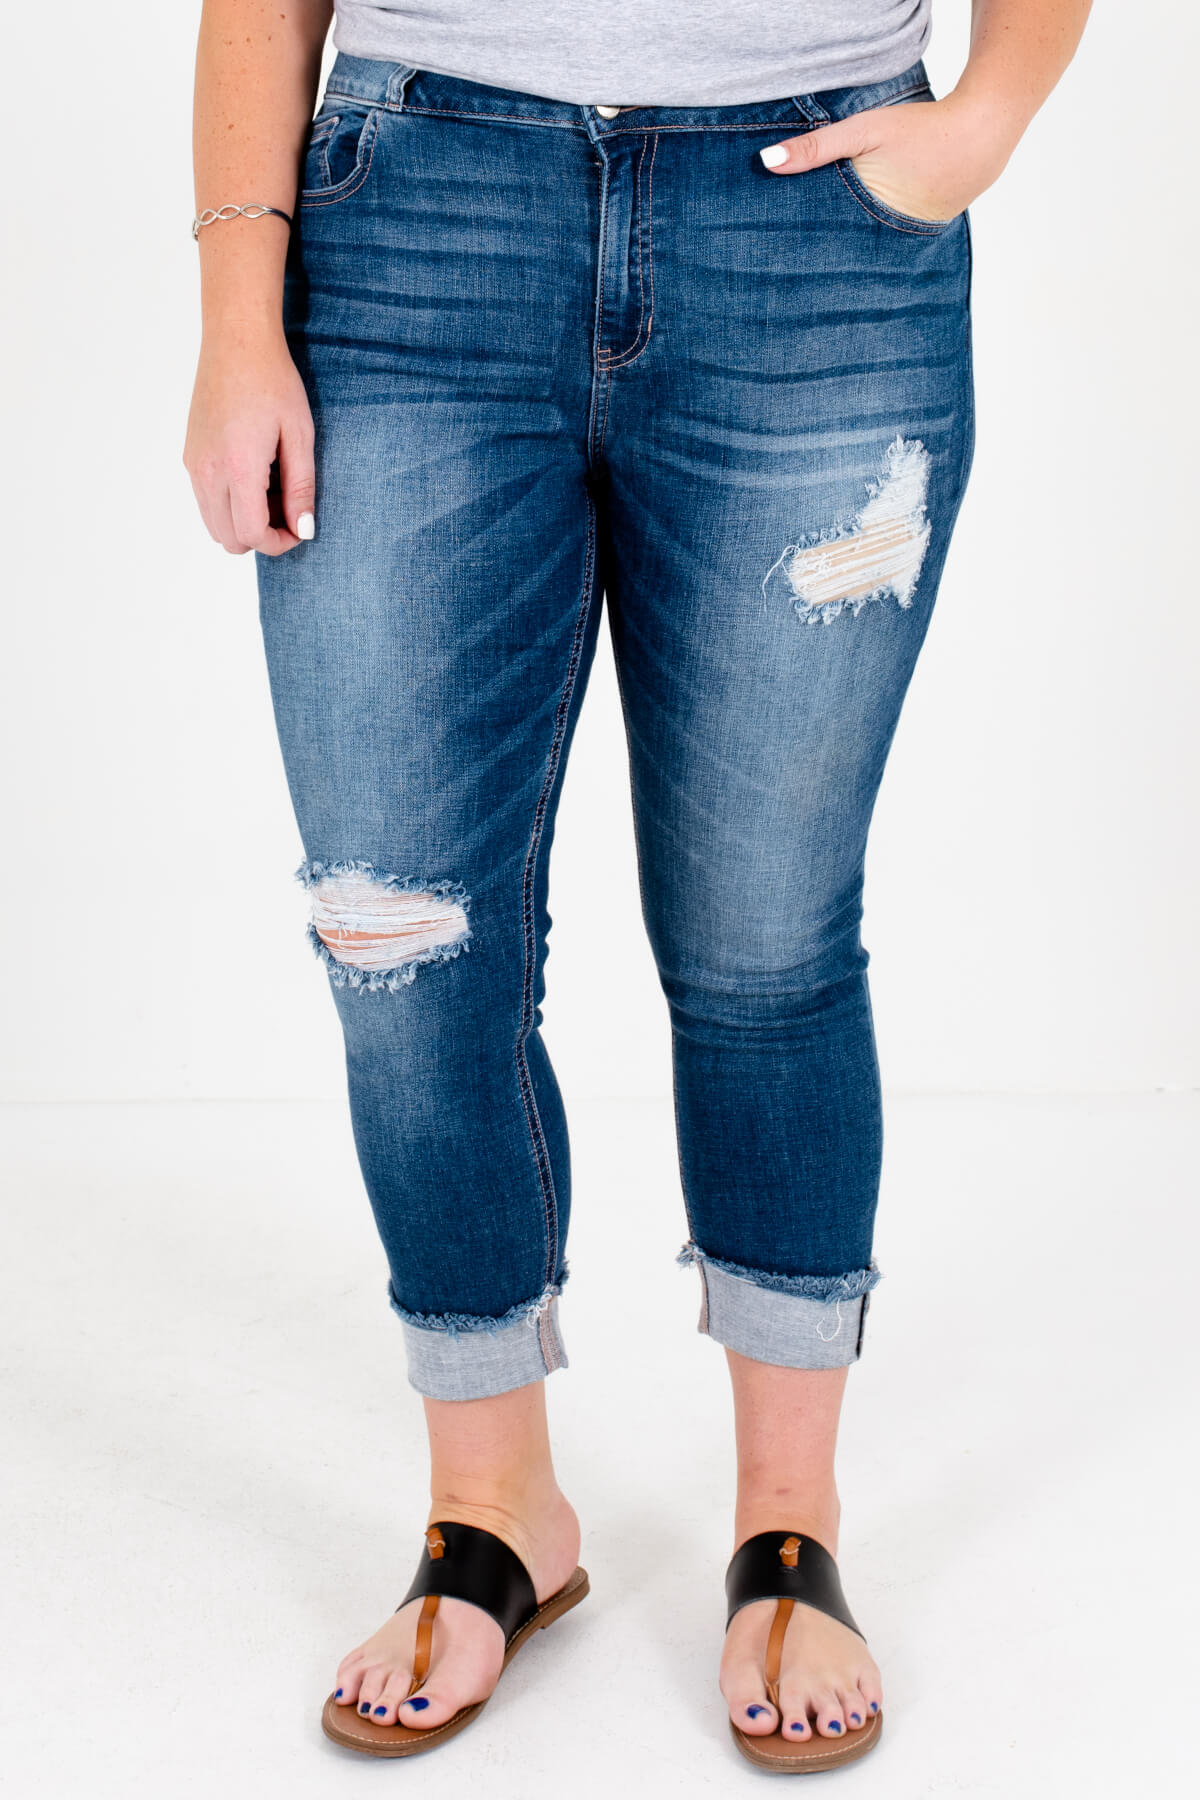 Medium Wash Blue Denim Distressed Detailing Boutique Plus Size Jeans for Women